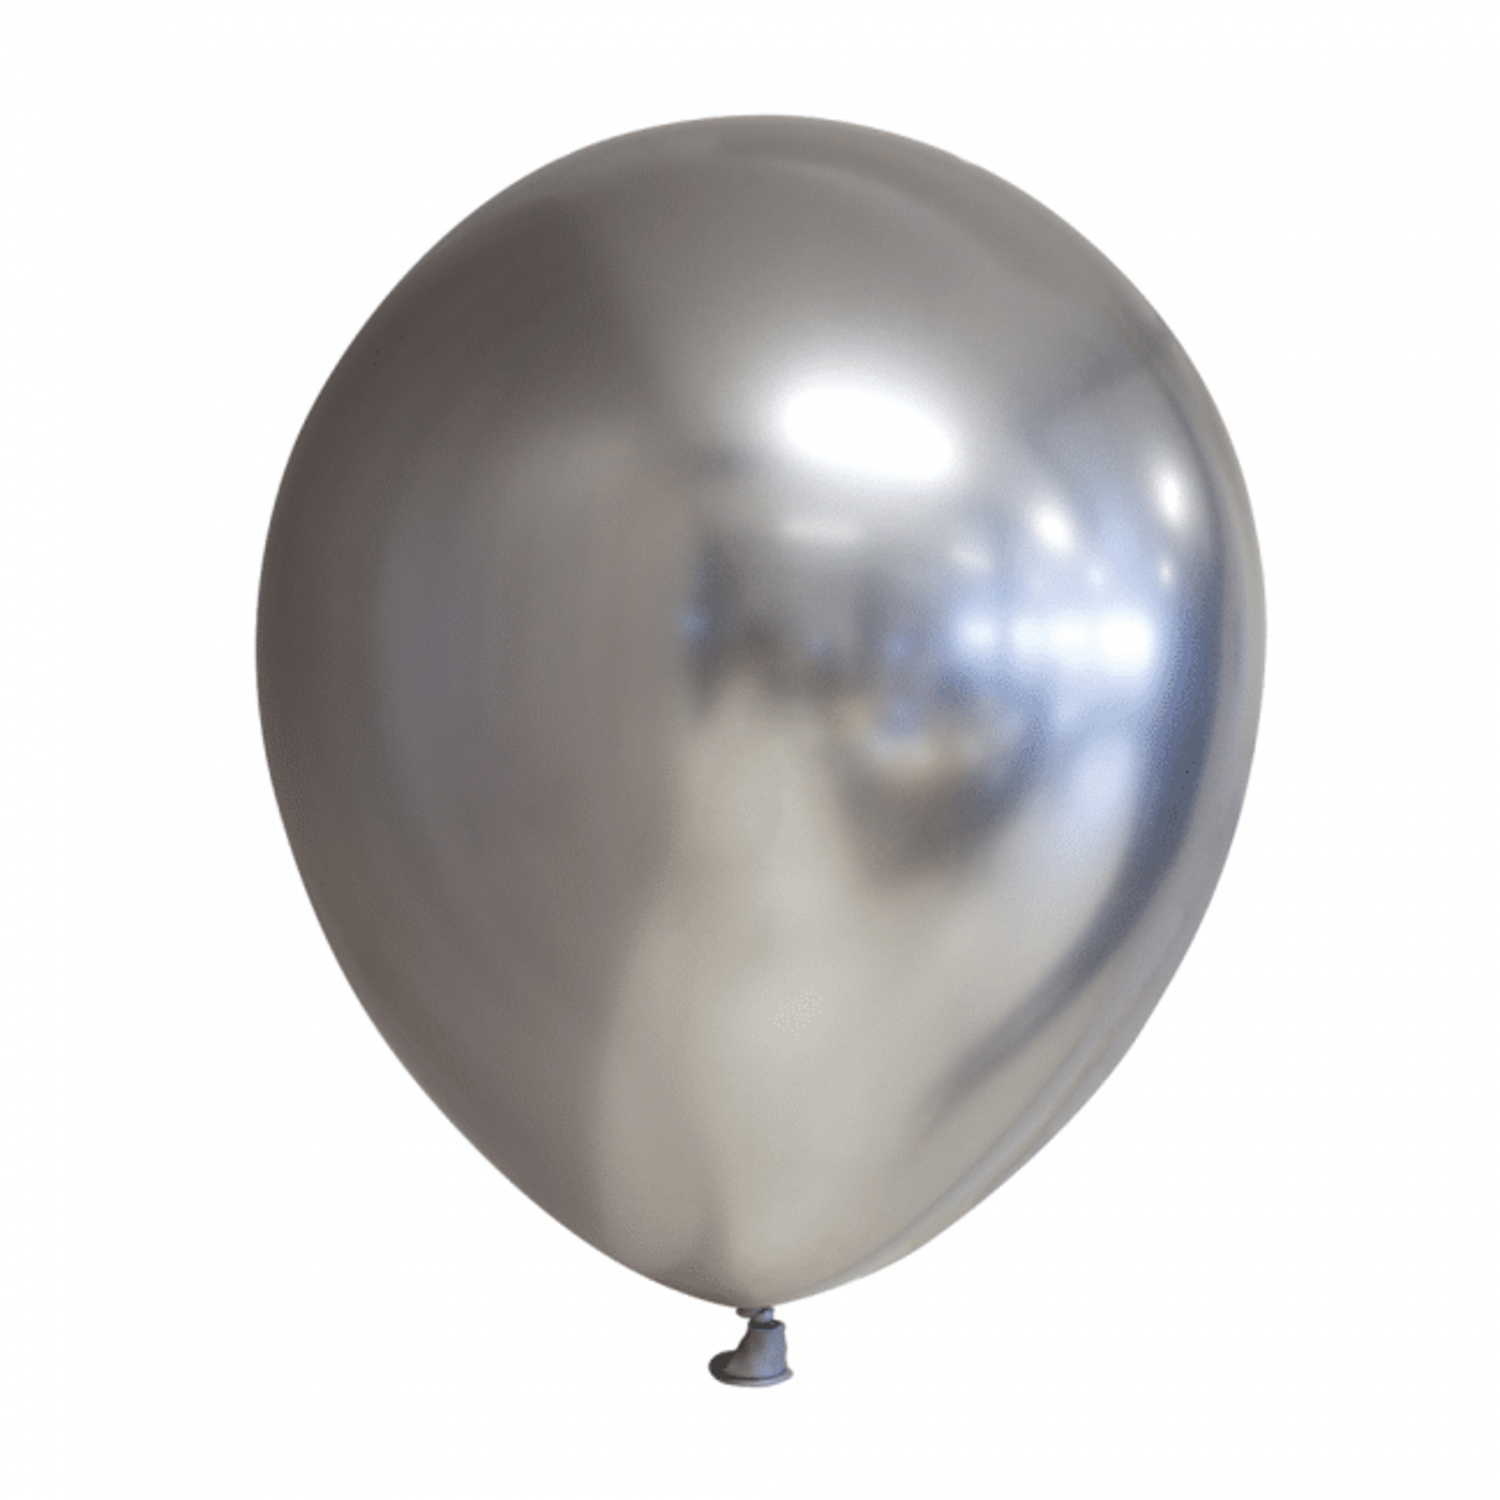 Ballons en argent chromé 30cm, Décoration Fête Ballons